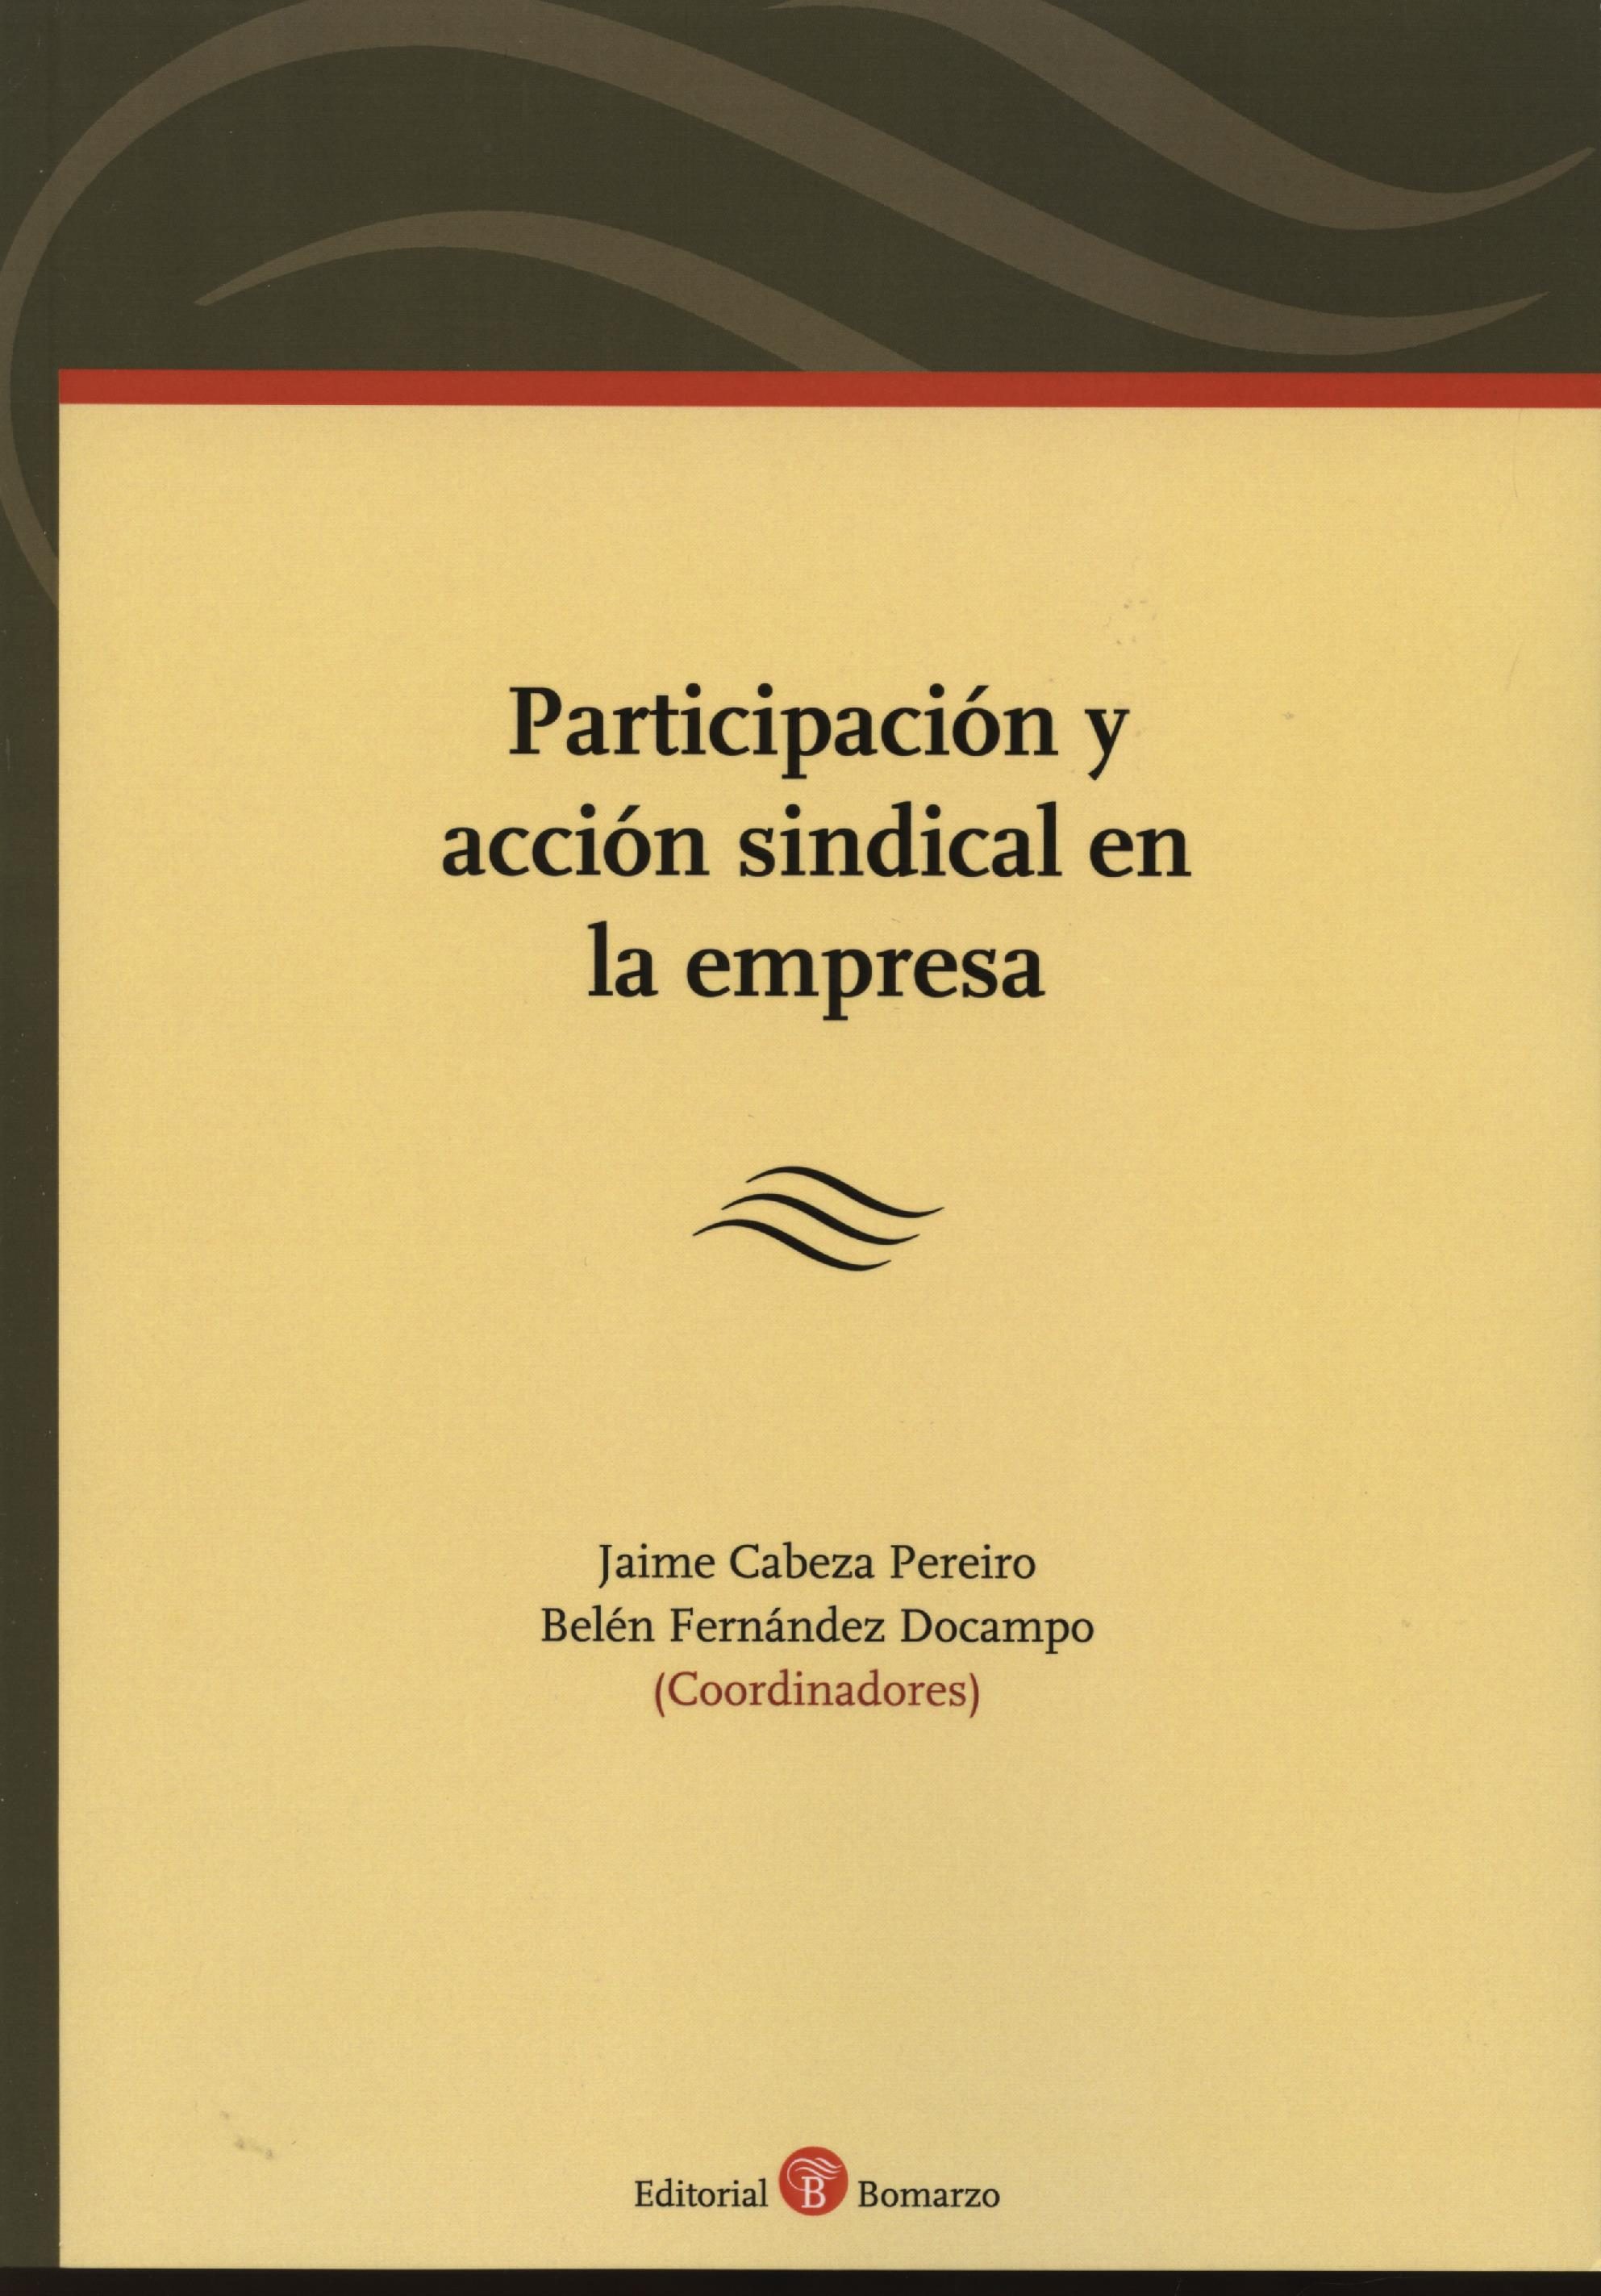 Imagen de portada del libro Participación y acción sindical en la empresa